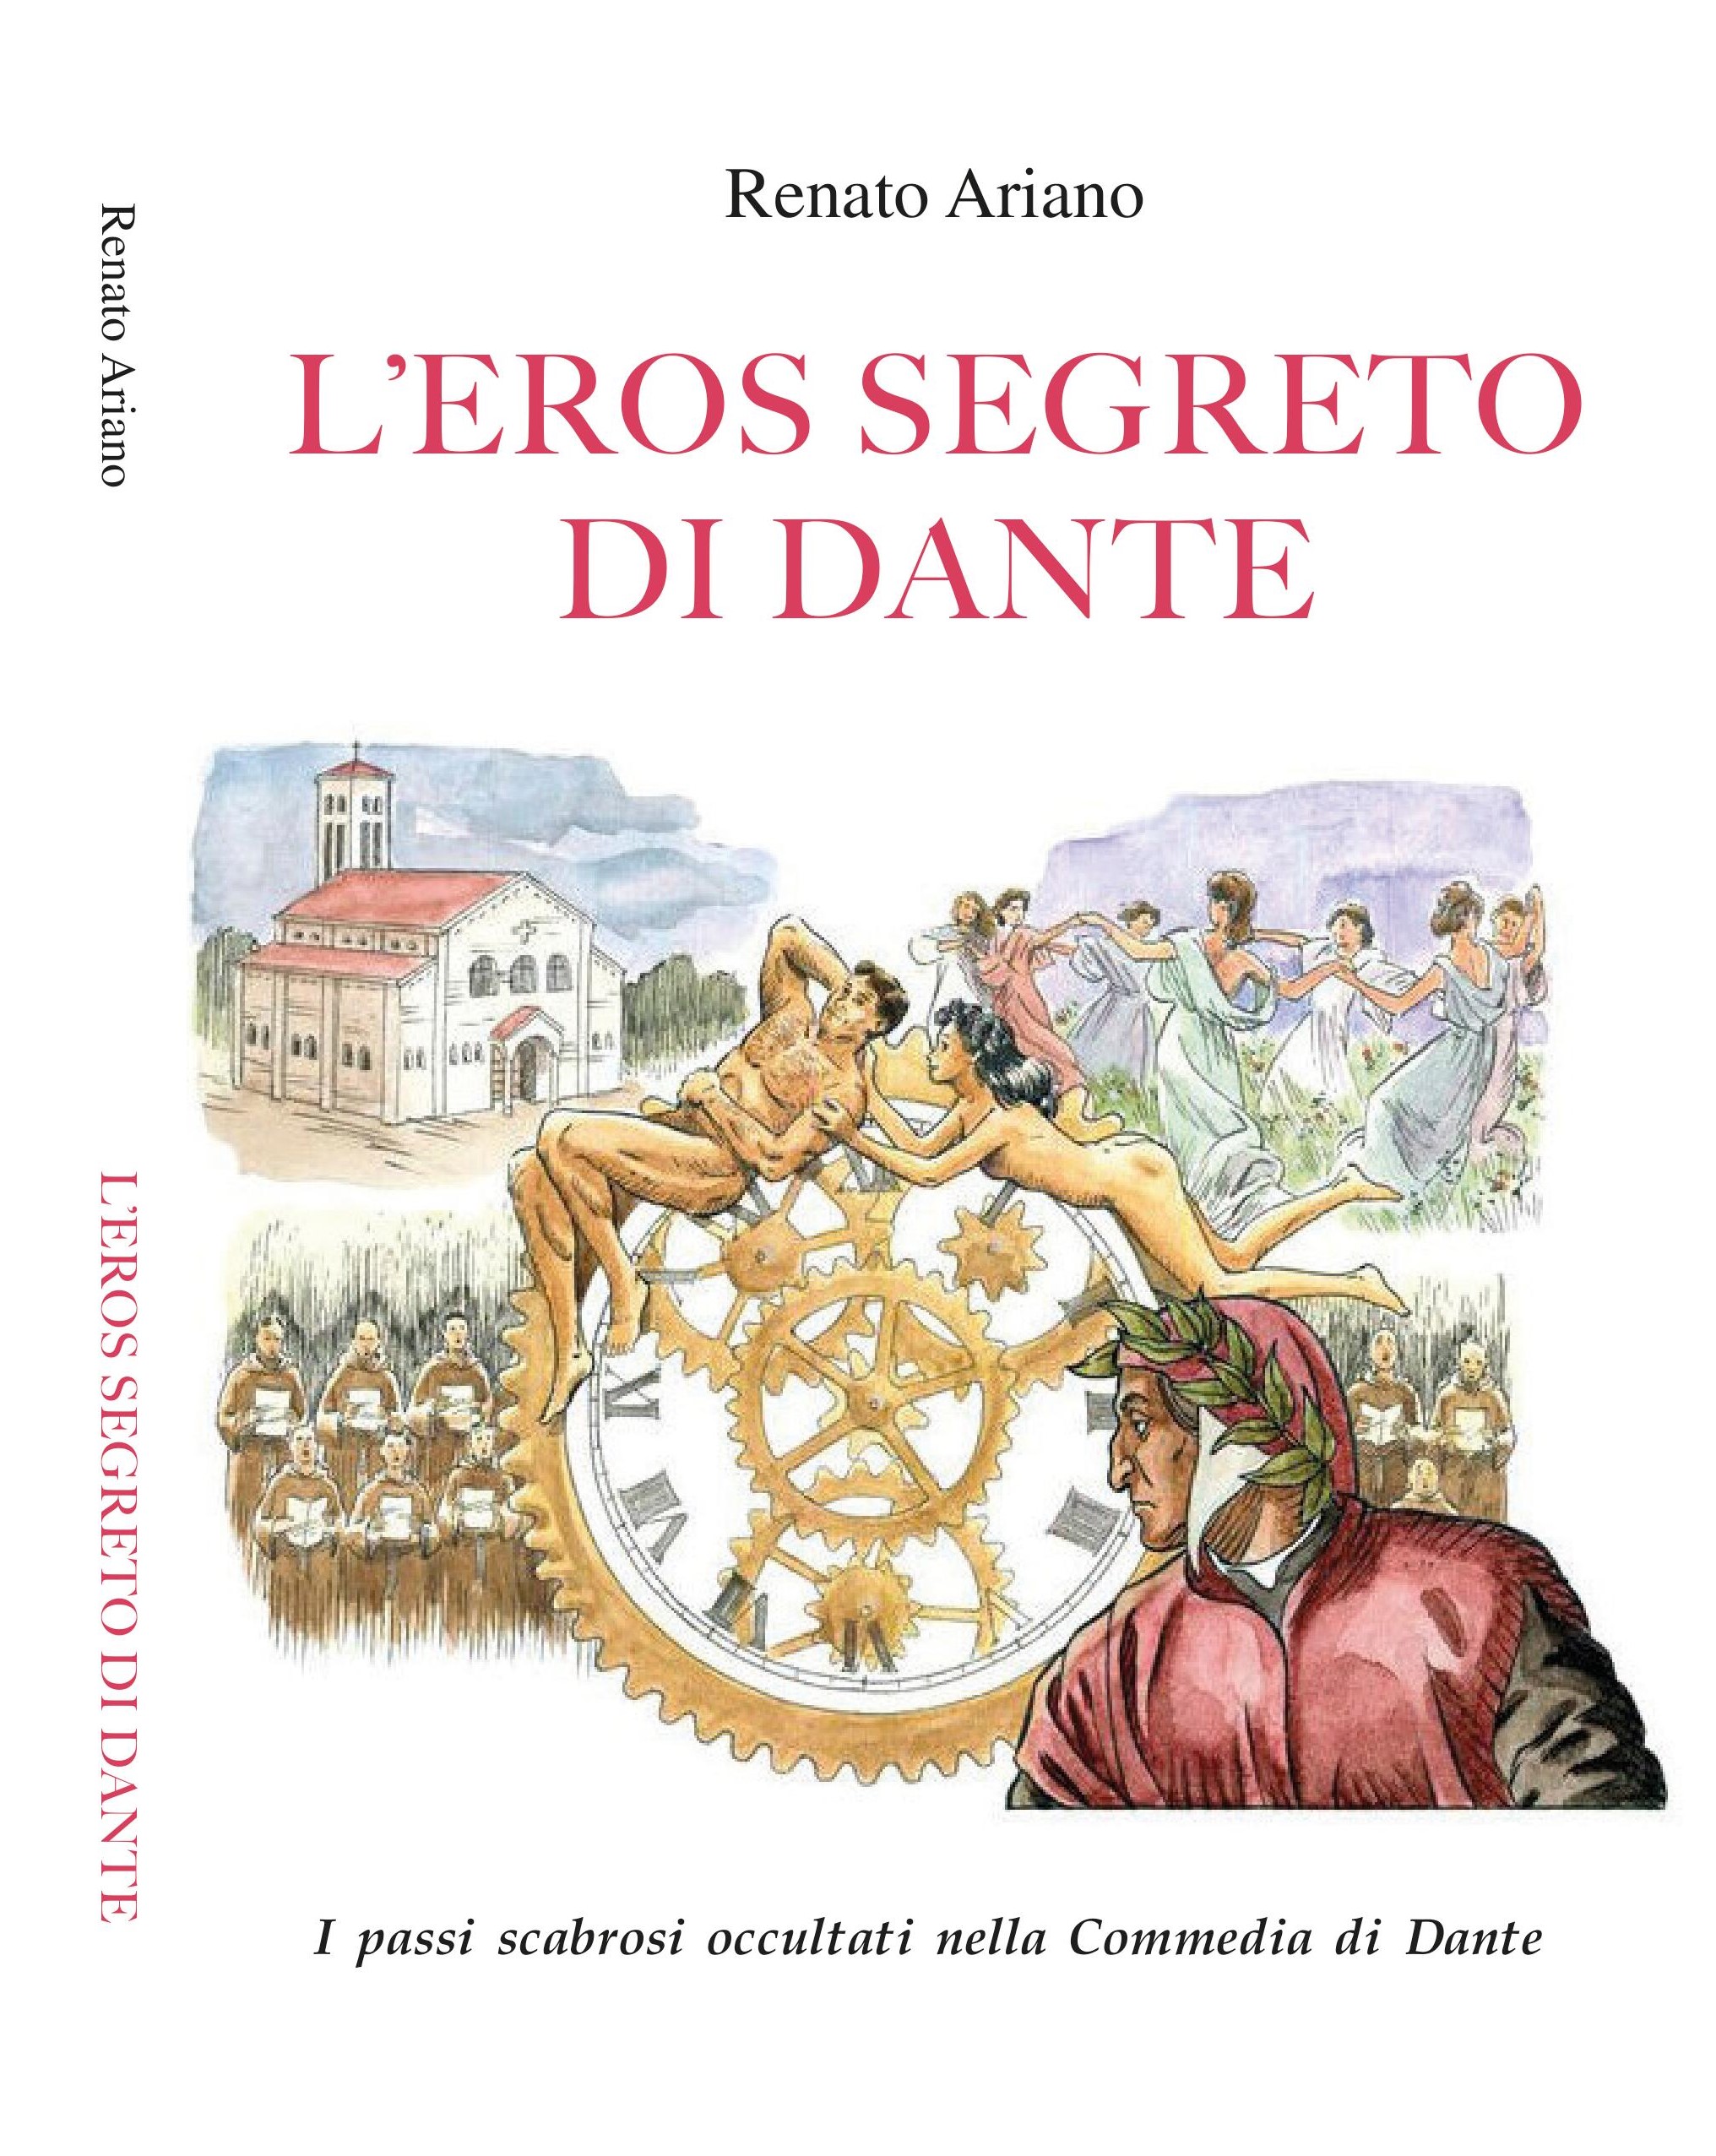 “L’eros segreto di Dante”, il libro che svela tutti i segreti del Sommo Poeta con una nuova lettura allegorica della Divina Commedia